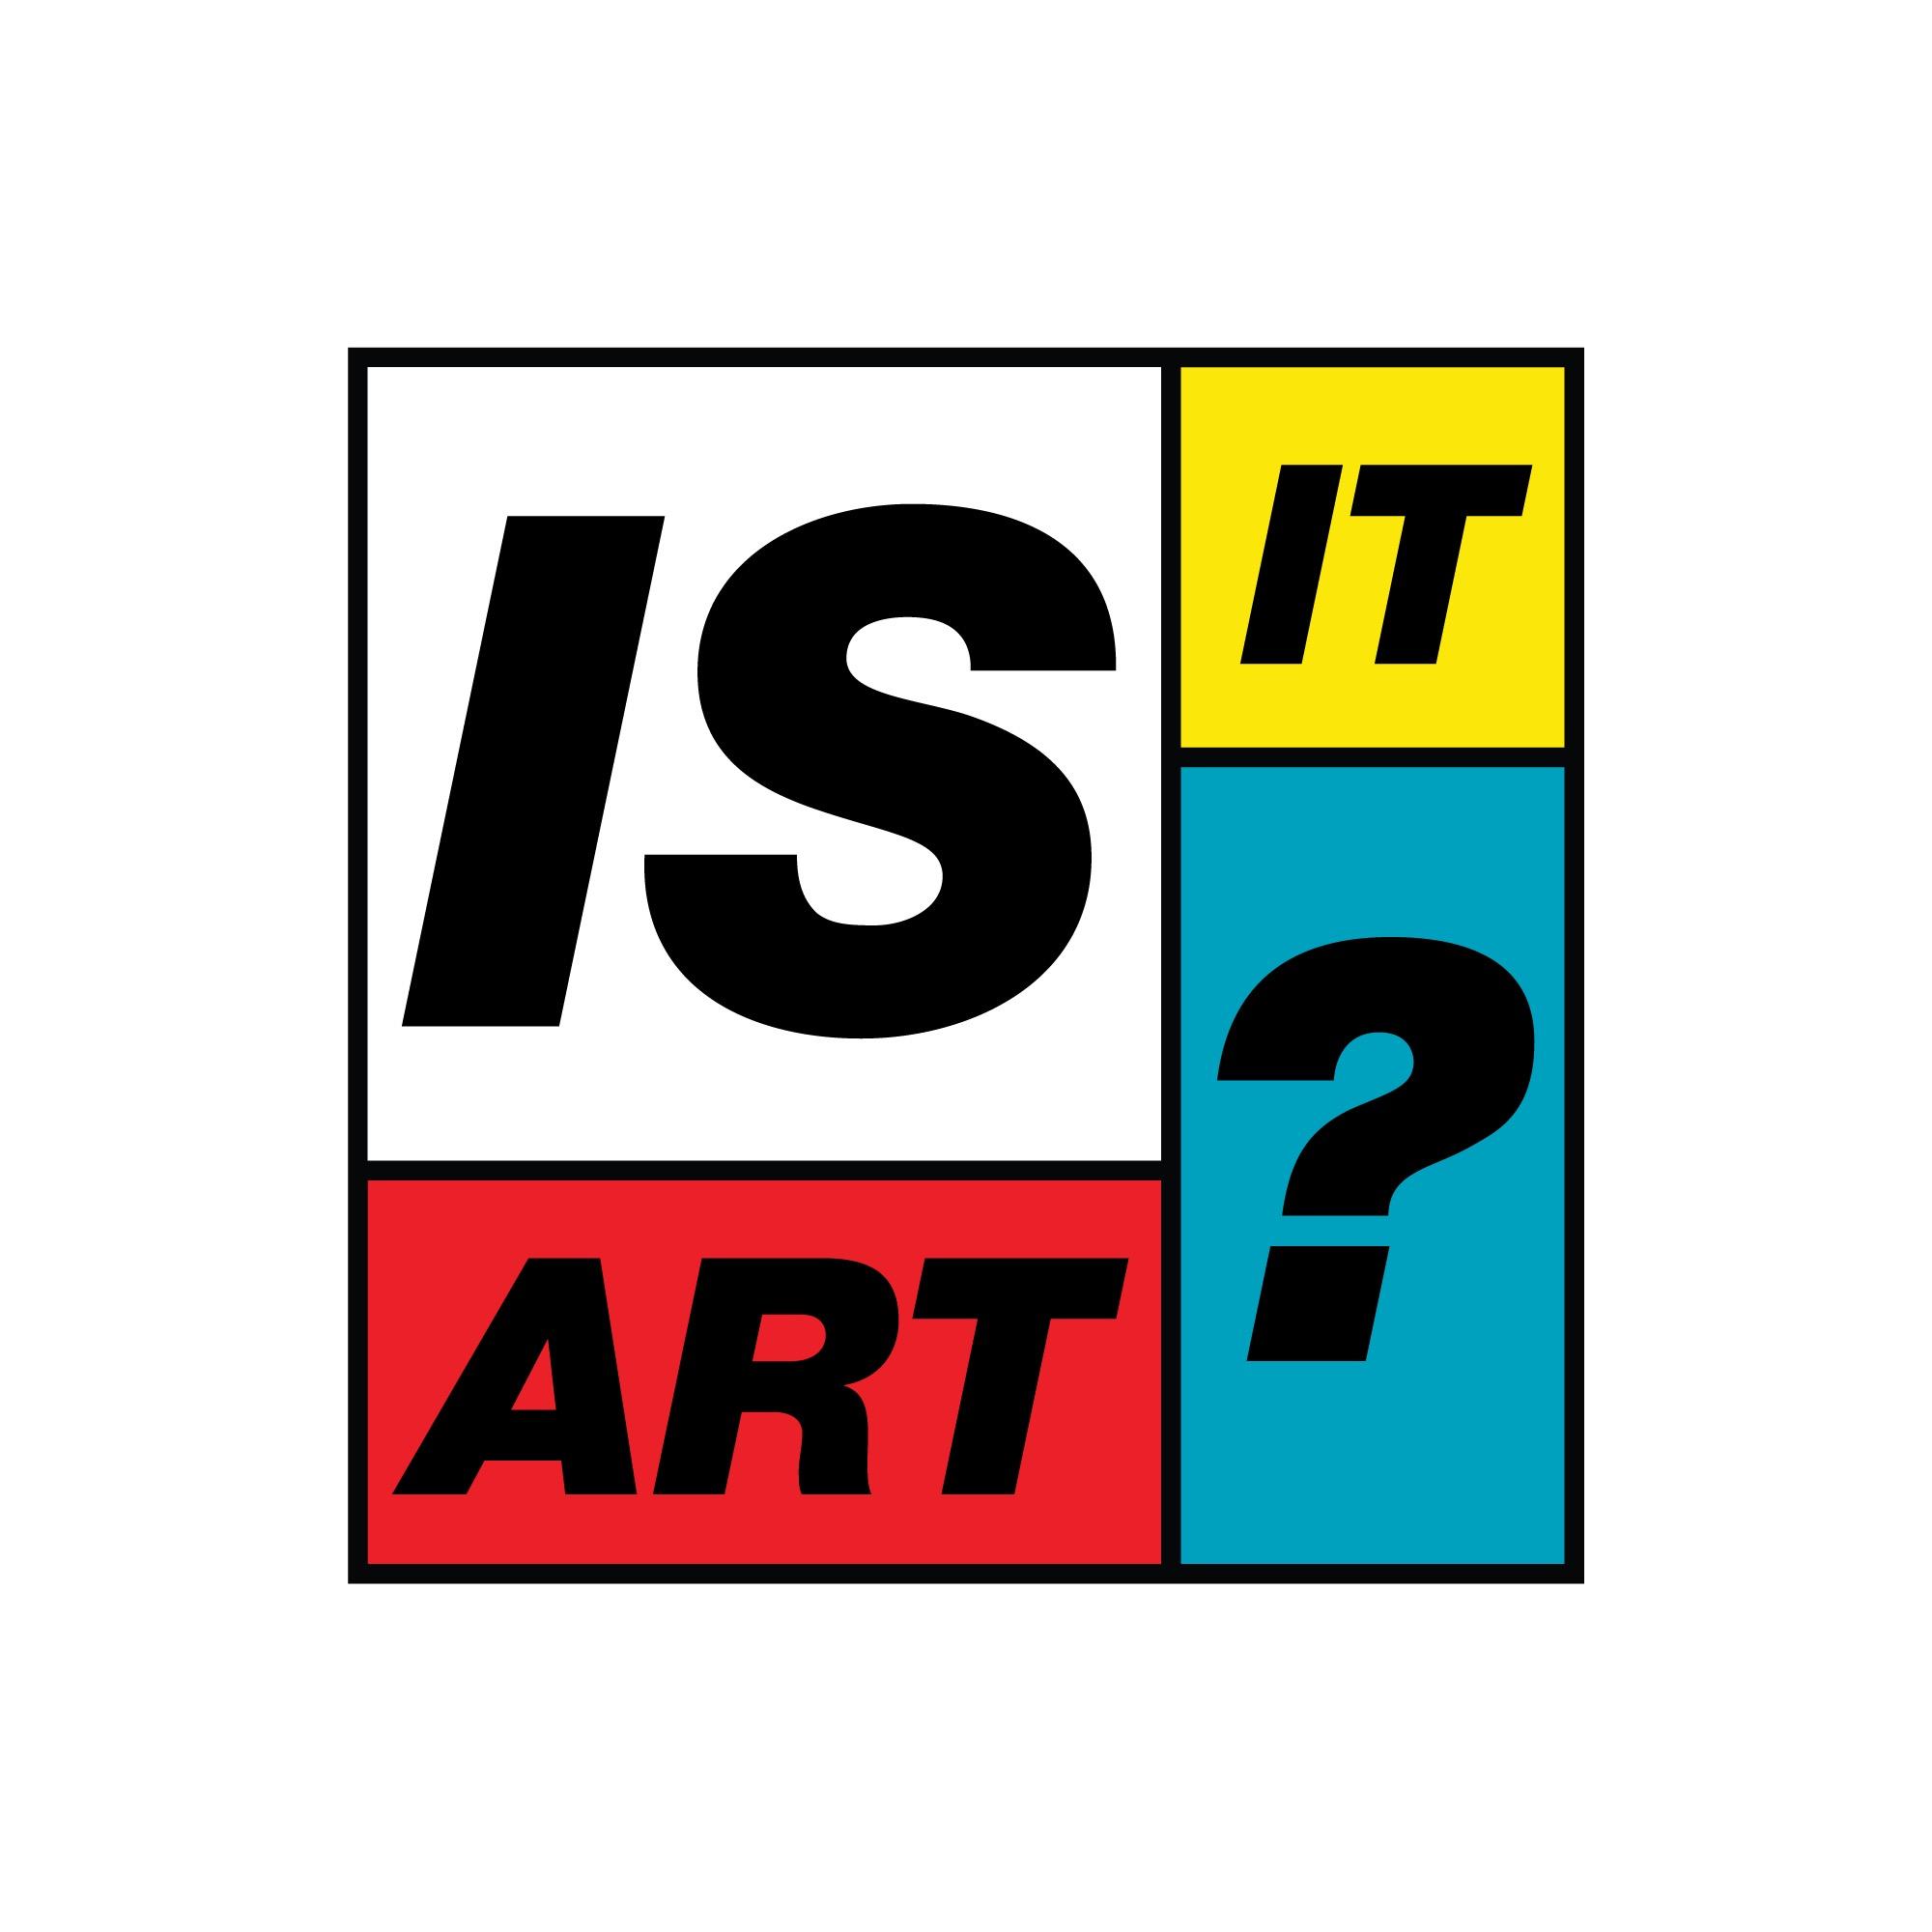 Is It Art?